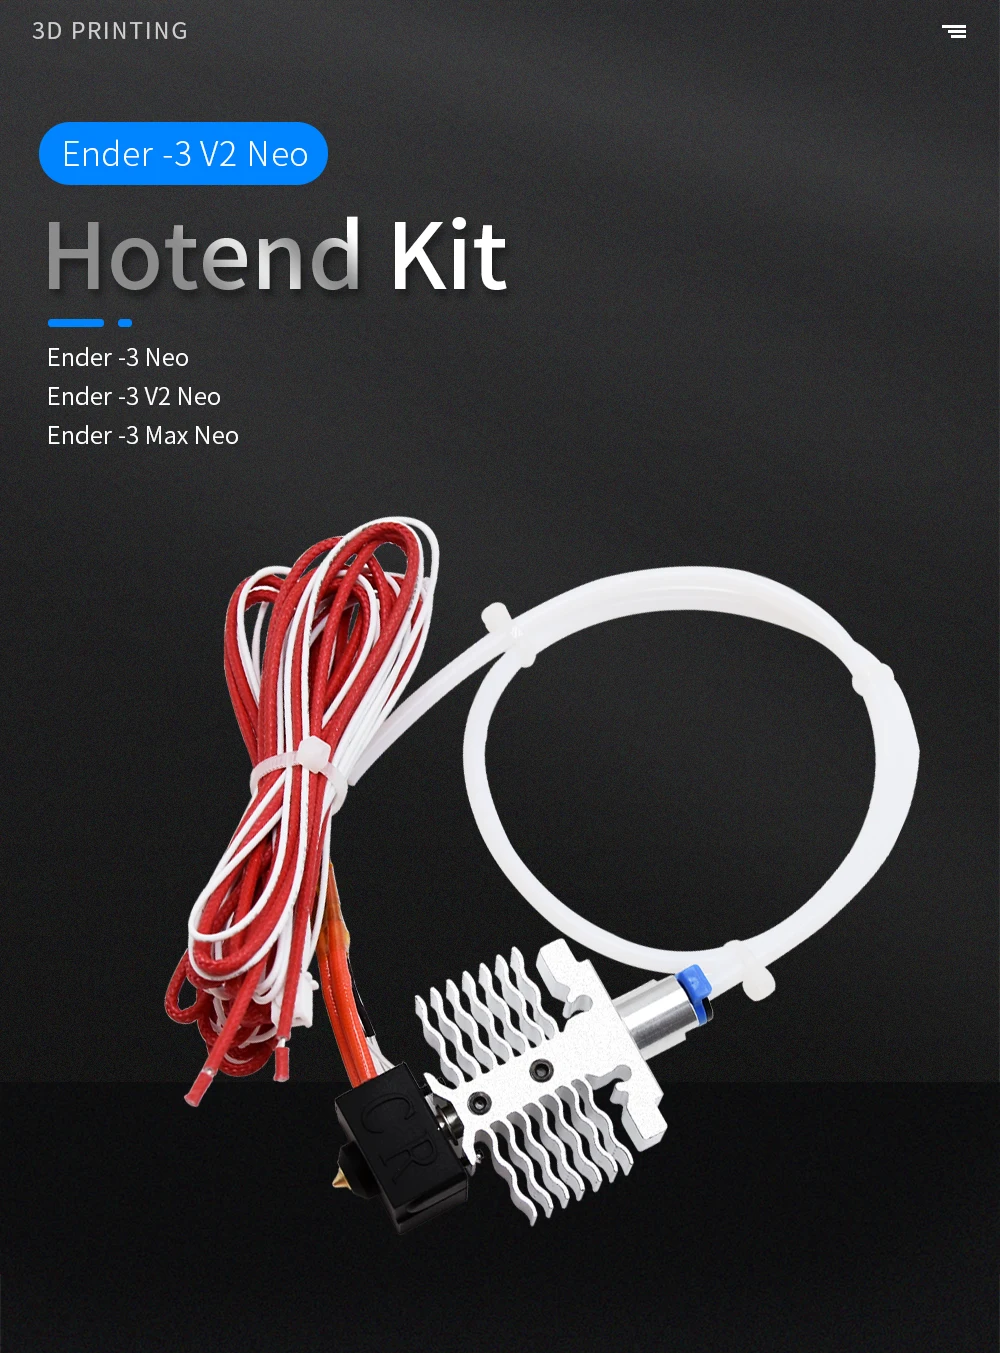 Hotend Kit Ender-3 V2 Neo/Ender-3 Max Neo/Ender-3 Neo Hotend Kit 24V 40W